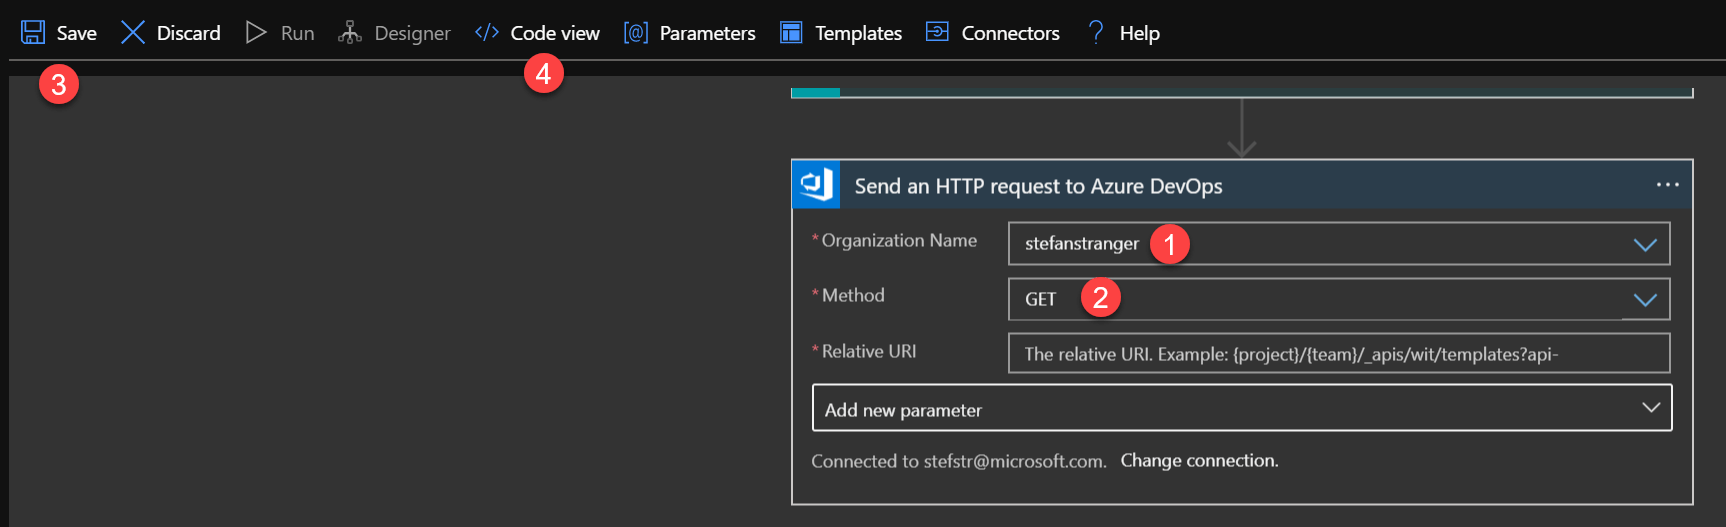 Screenshot to configure Send an HTTP request to Azure DevOps